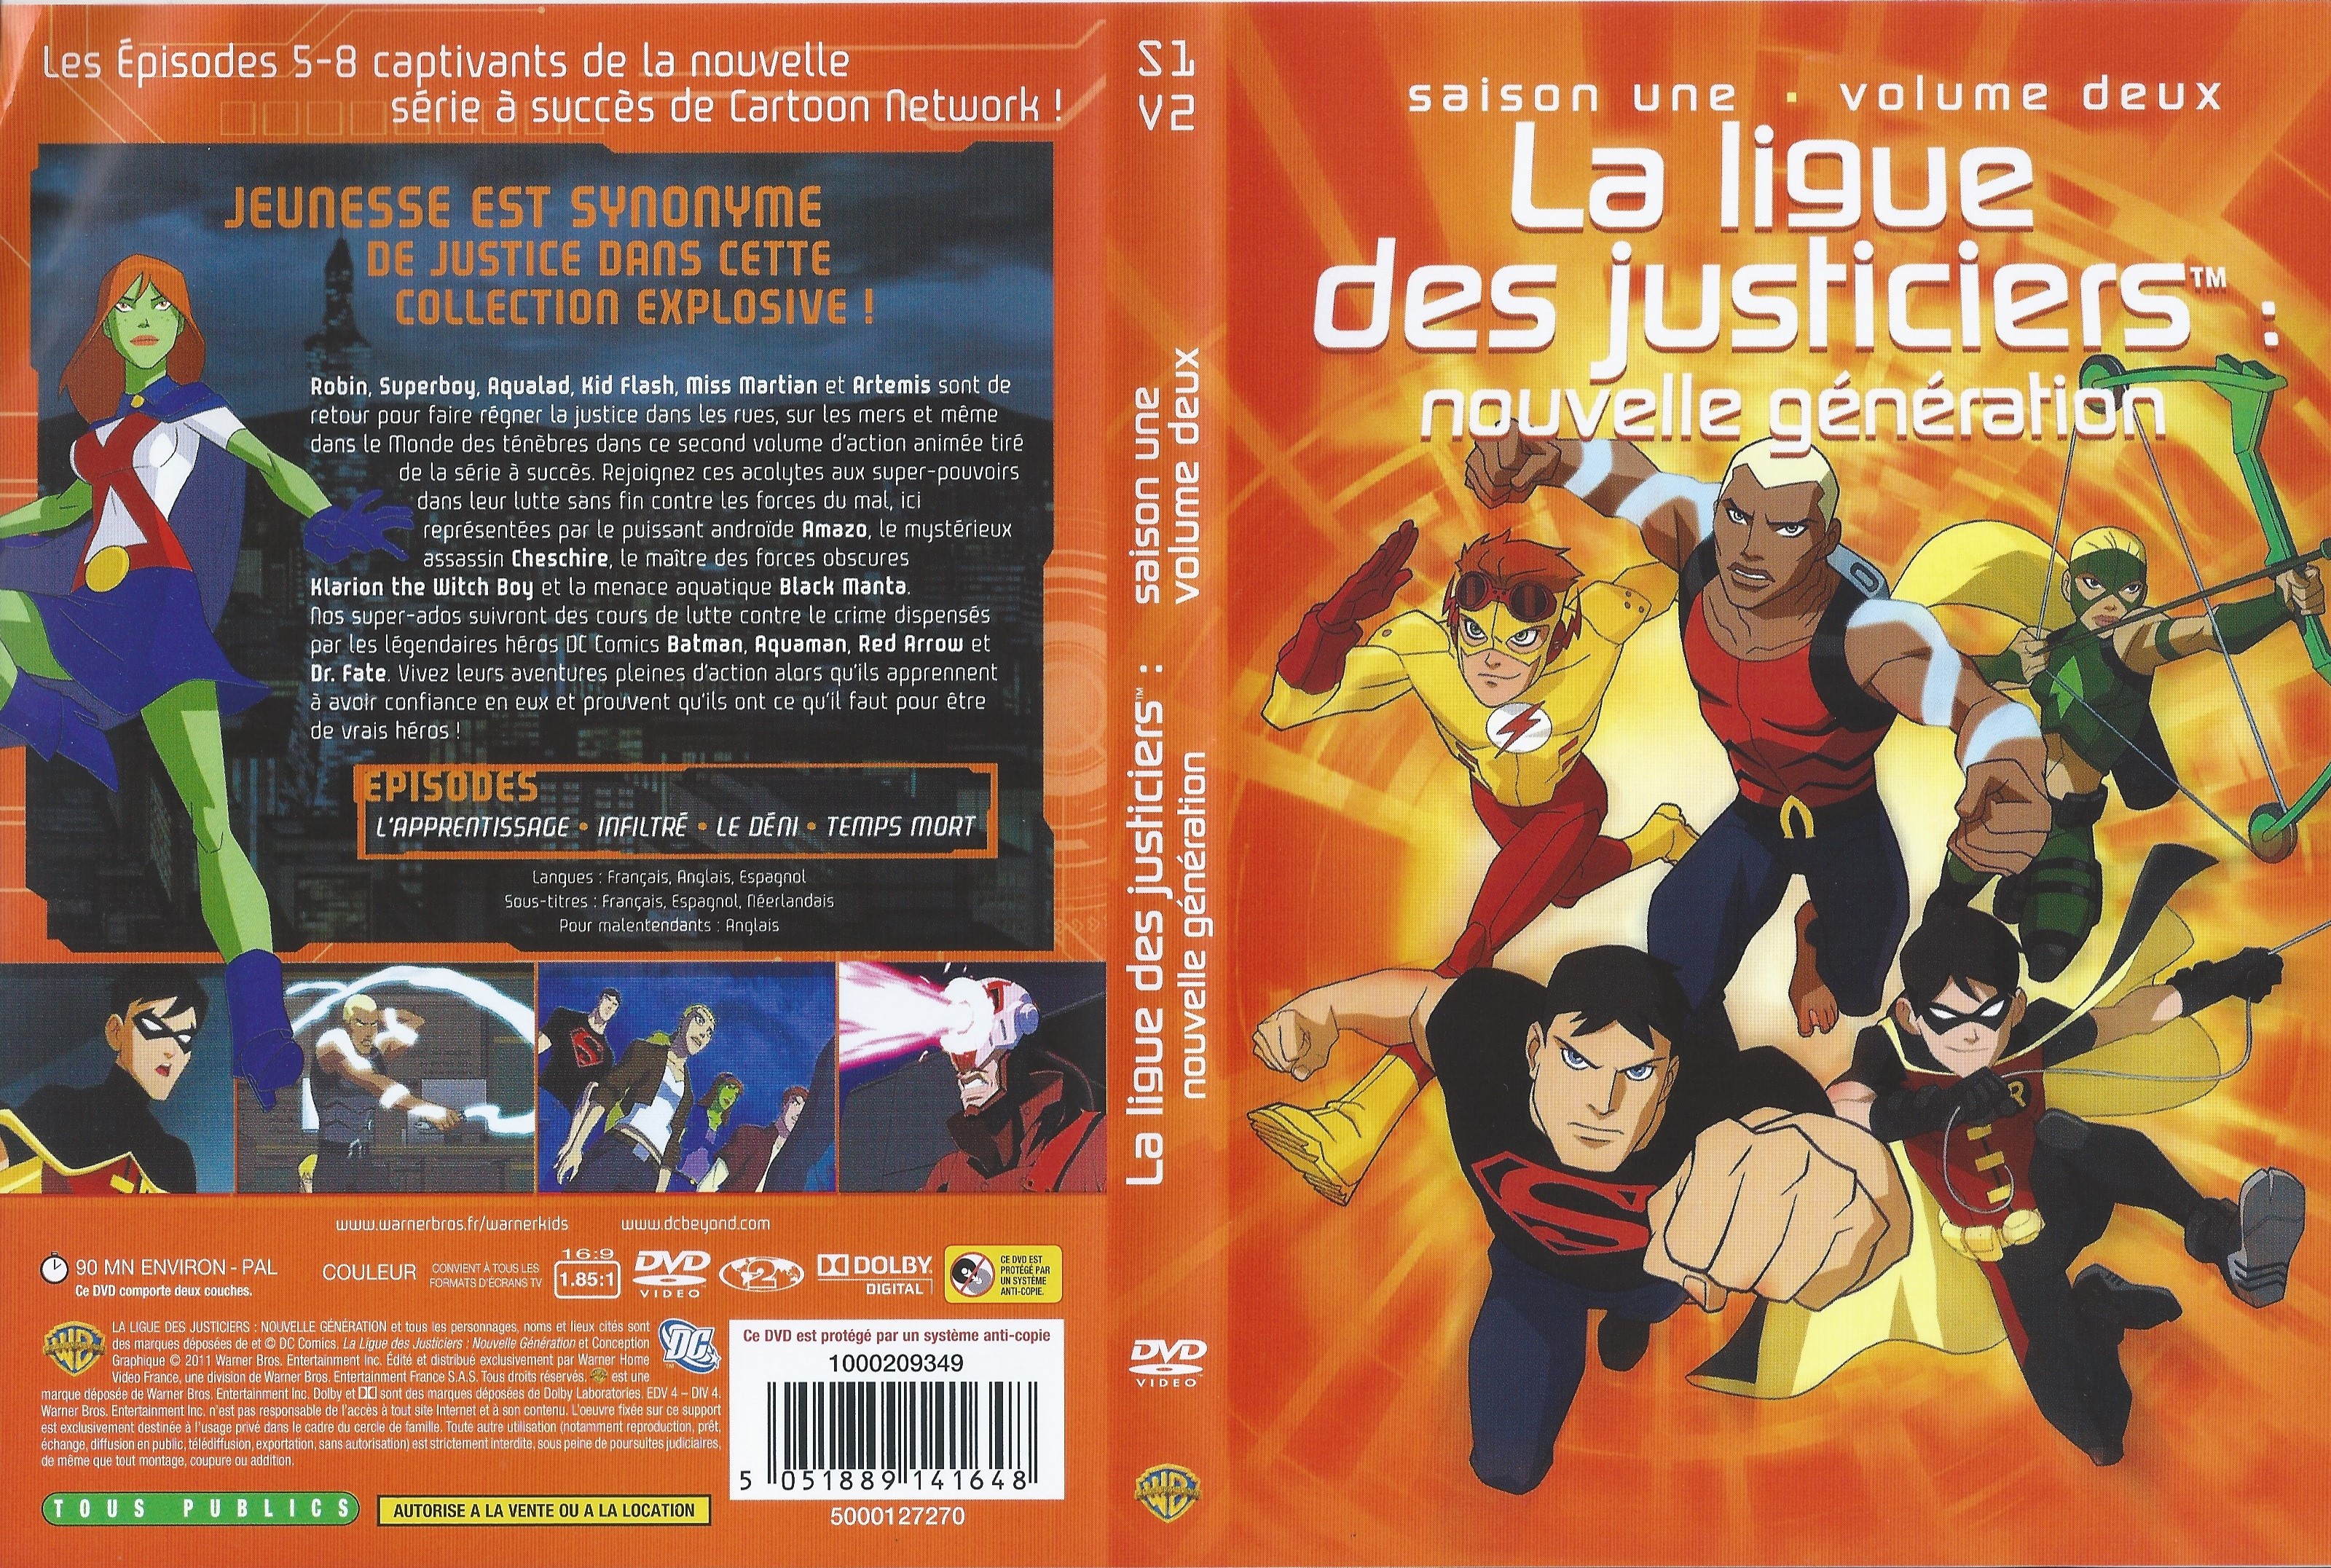 Jaquette DVD La ligue des justiciers nouvelle generation Saison 1 Vol 02